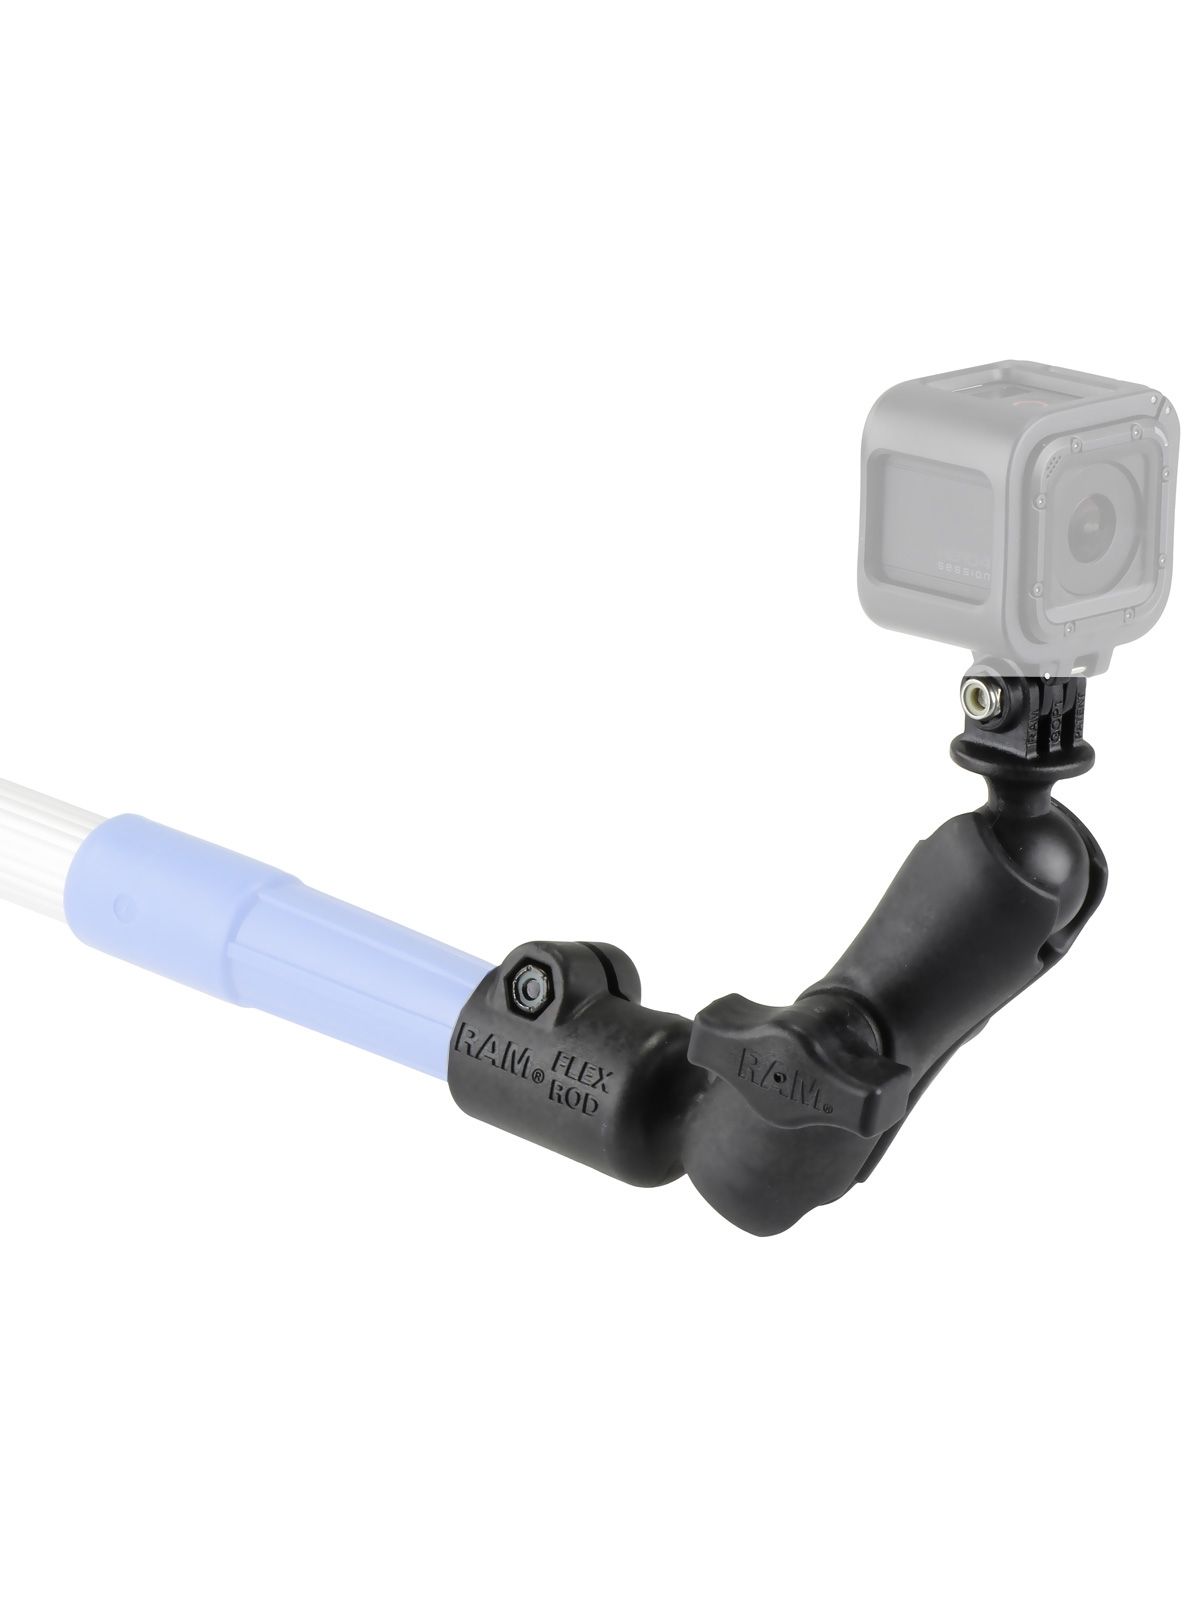 RAM Mounts GoPro Verbundstoff Tele-Mount Kamera-Adapter - mit Tele-Mount Basis, B-Kugel (1 Zoll), im Polybeutel